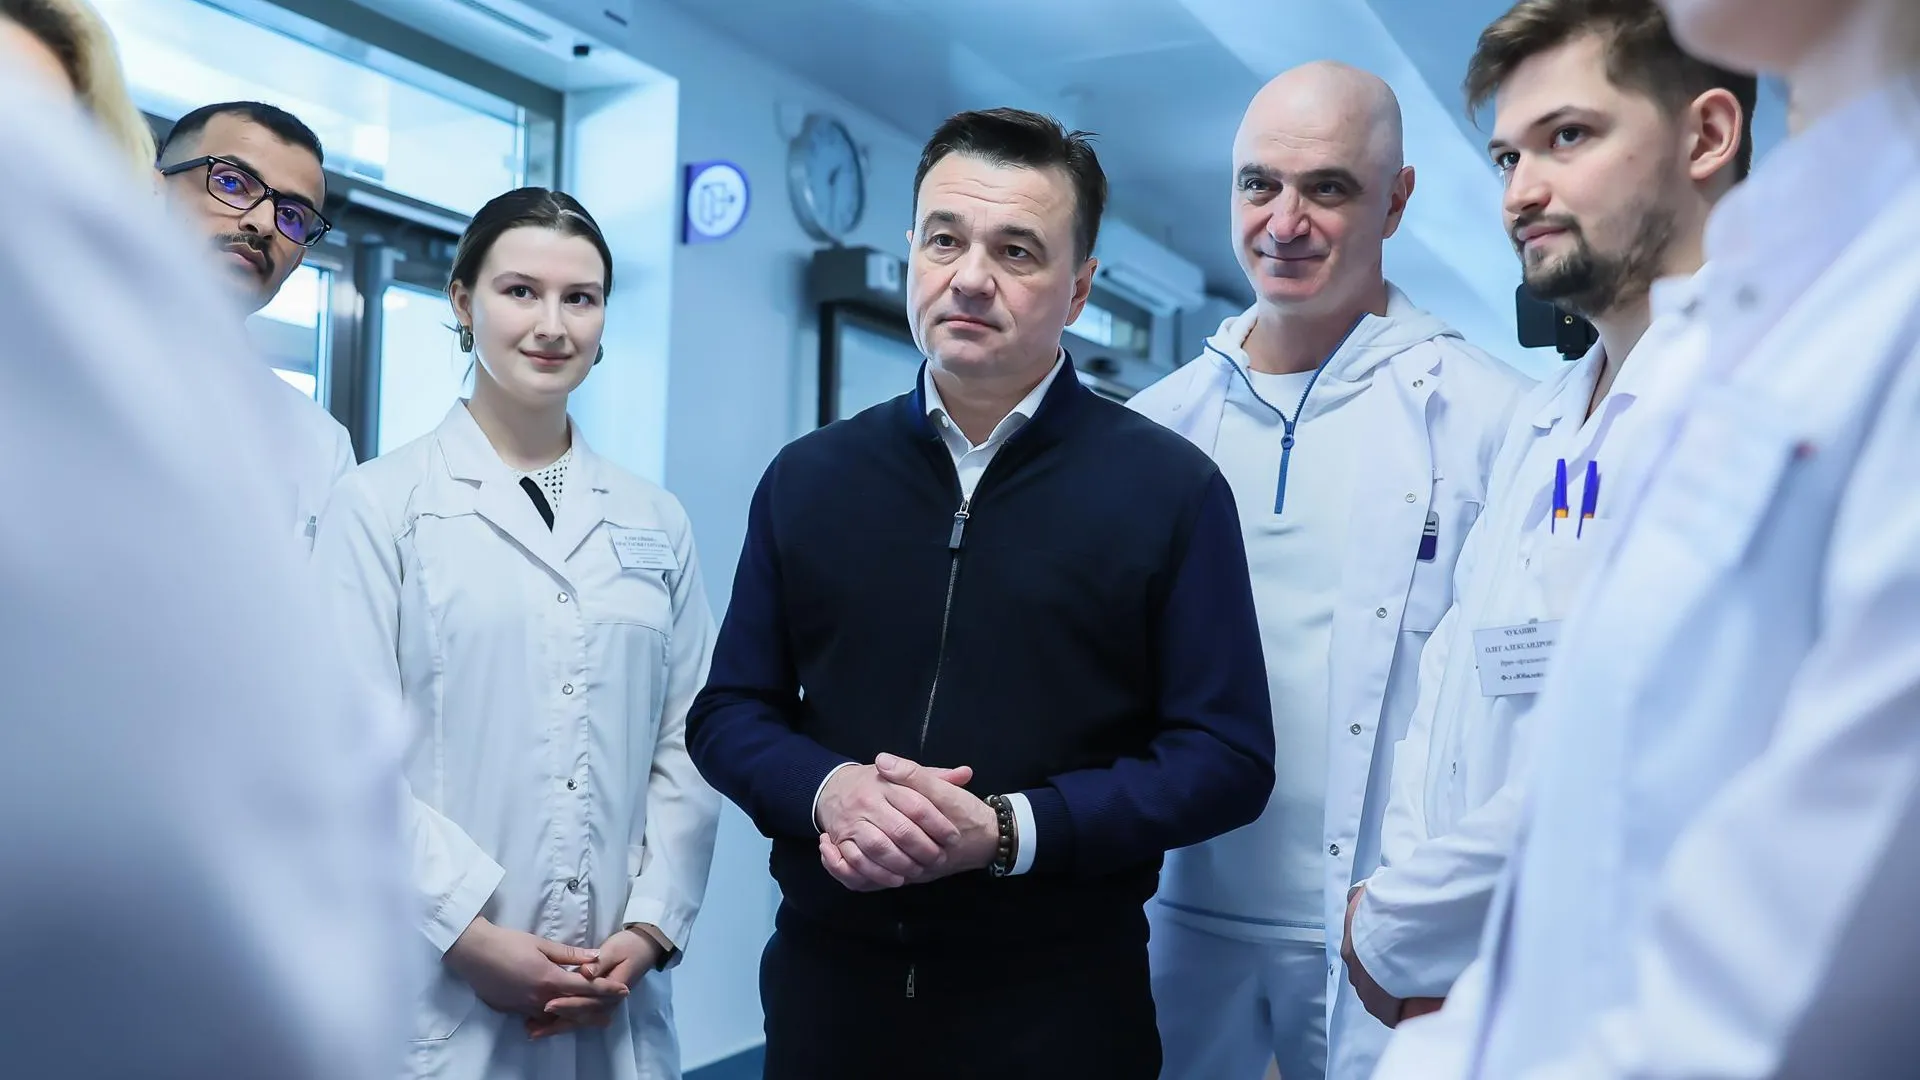 Губернатор Воробьев: поликлинику в микрорайоне Юбилейный в Королеве оснастят новым медицинским оборудованием